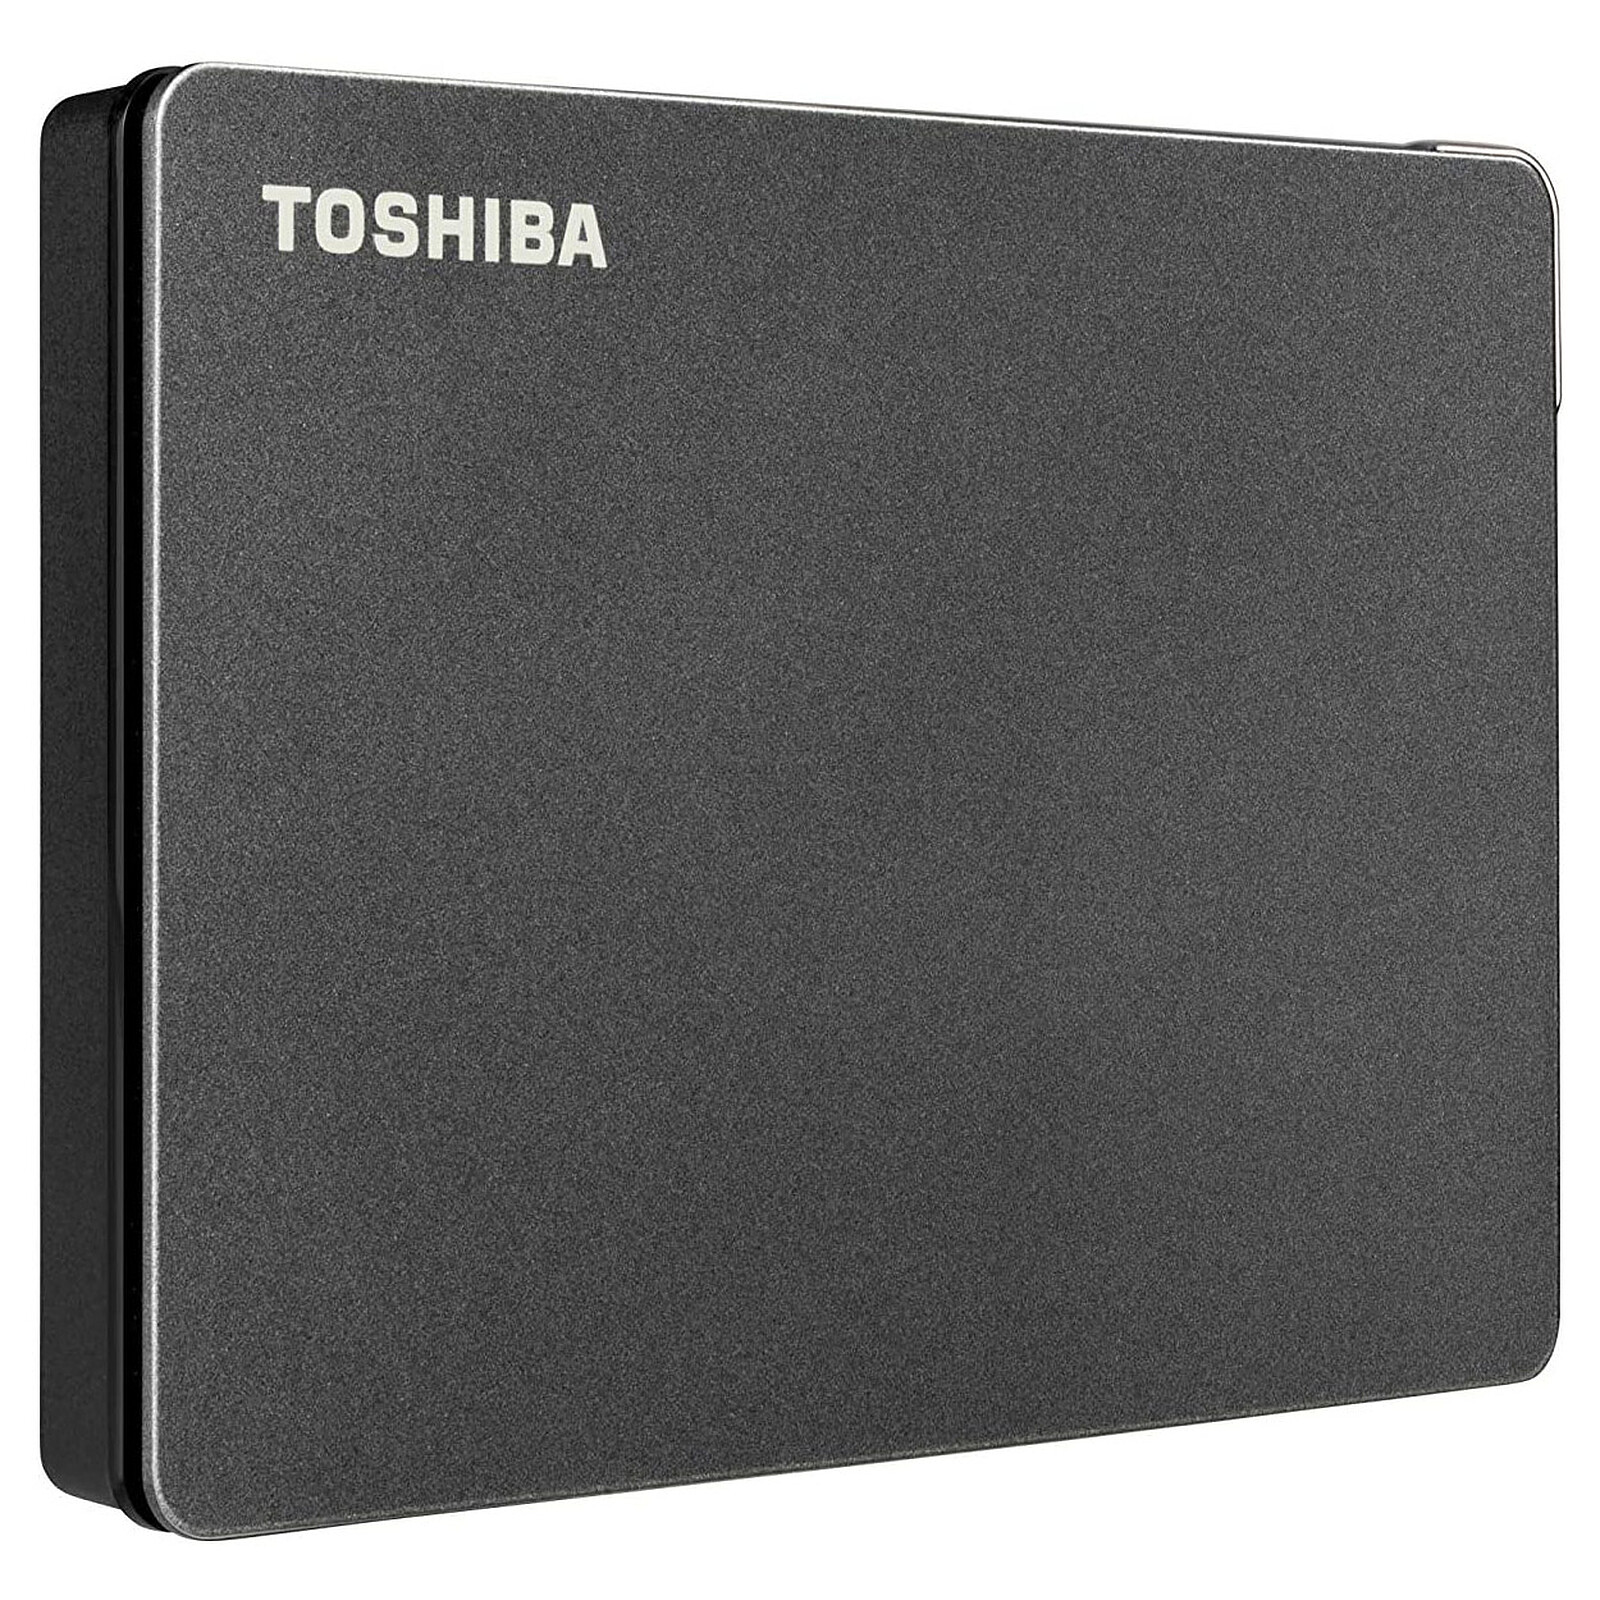 Toshiba Canvio Gaming 4 To Noir - Disque dur externe - Garantie 3